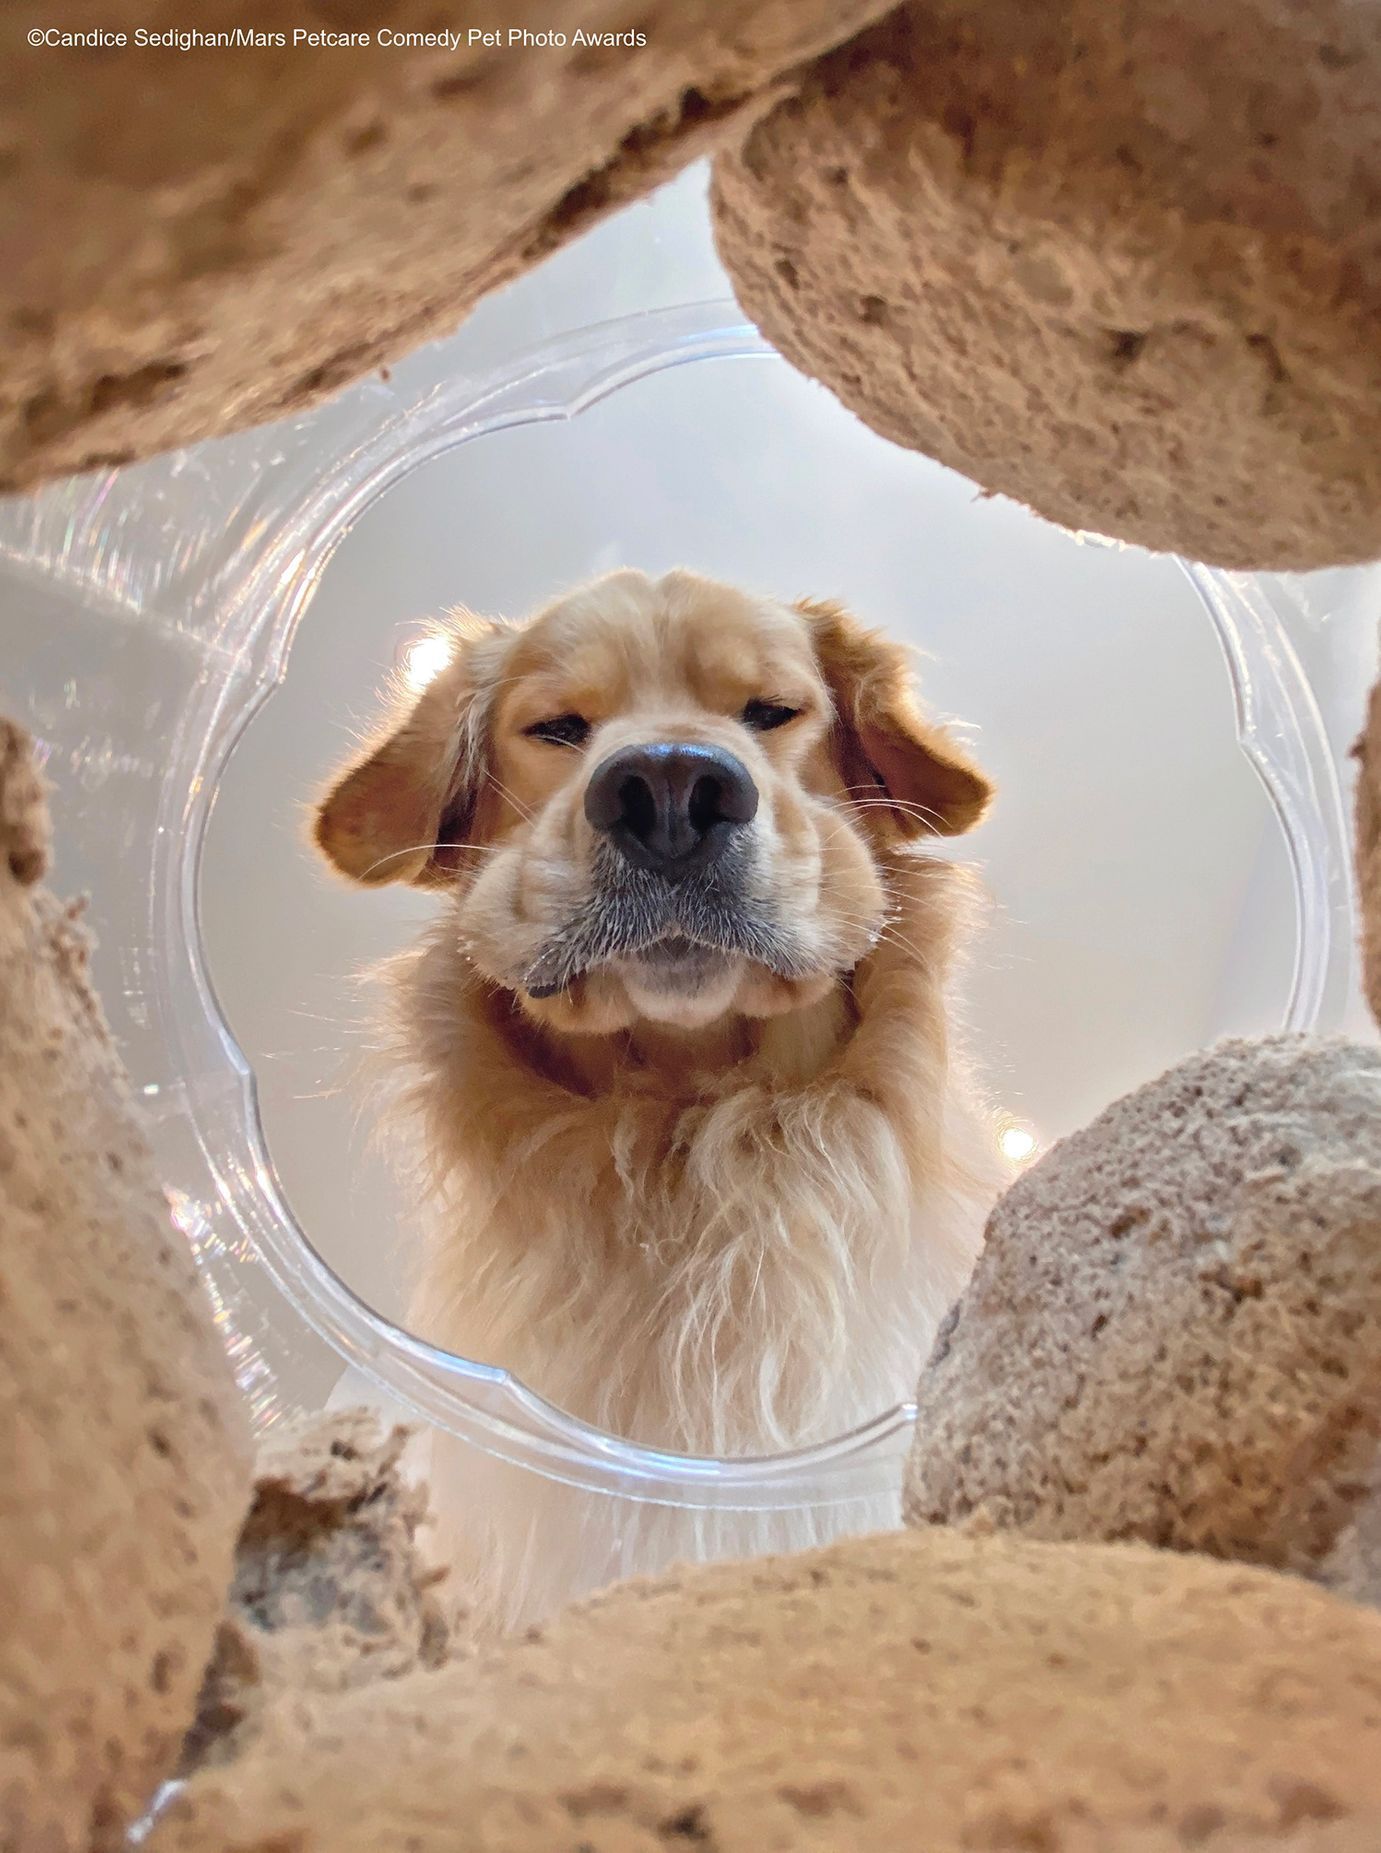 Veselé fotky domácích mazlíčků ze soutěže Mars Petcare Comedy Pet Photography Awards 2020